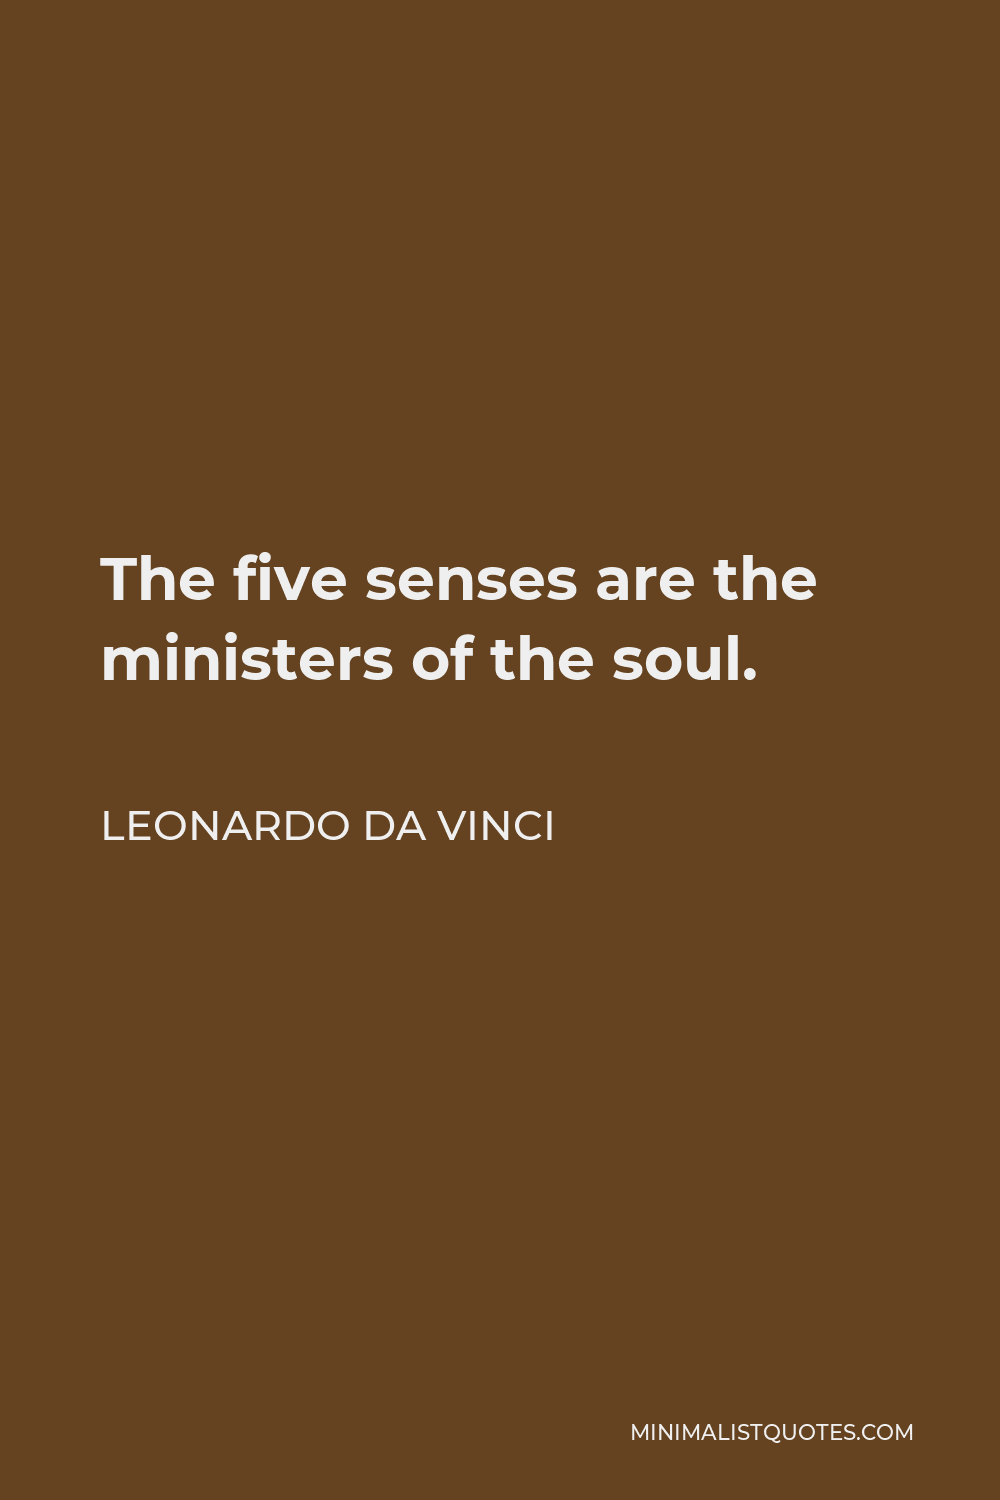 Leonardo da Vinci Quote - The five senses are the ministers of the soul.